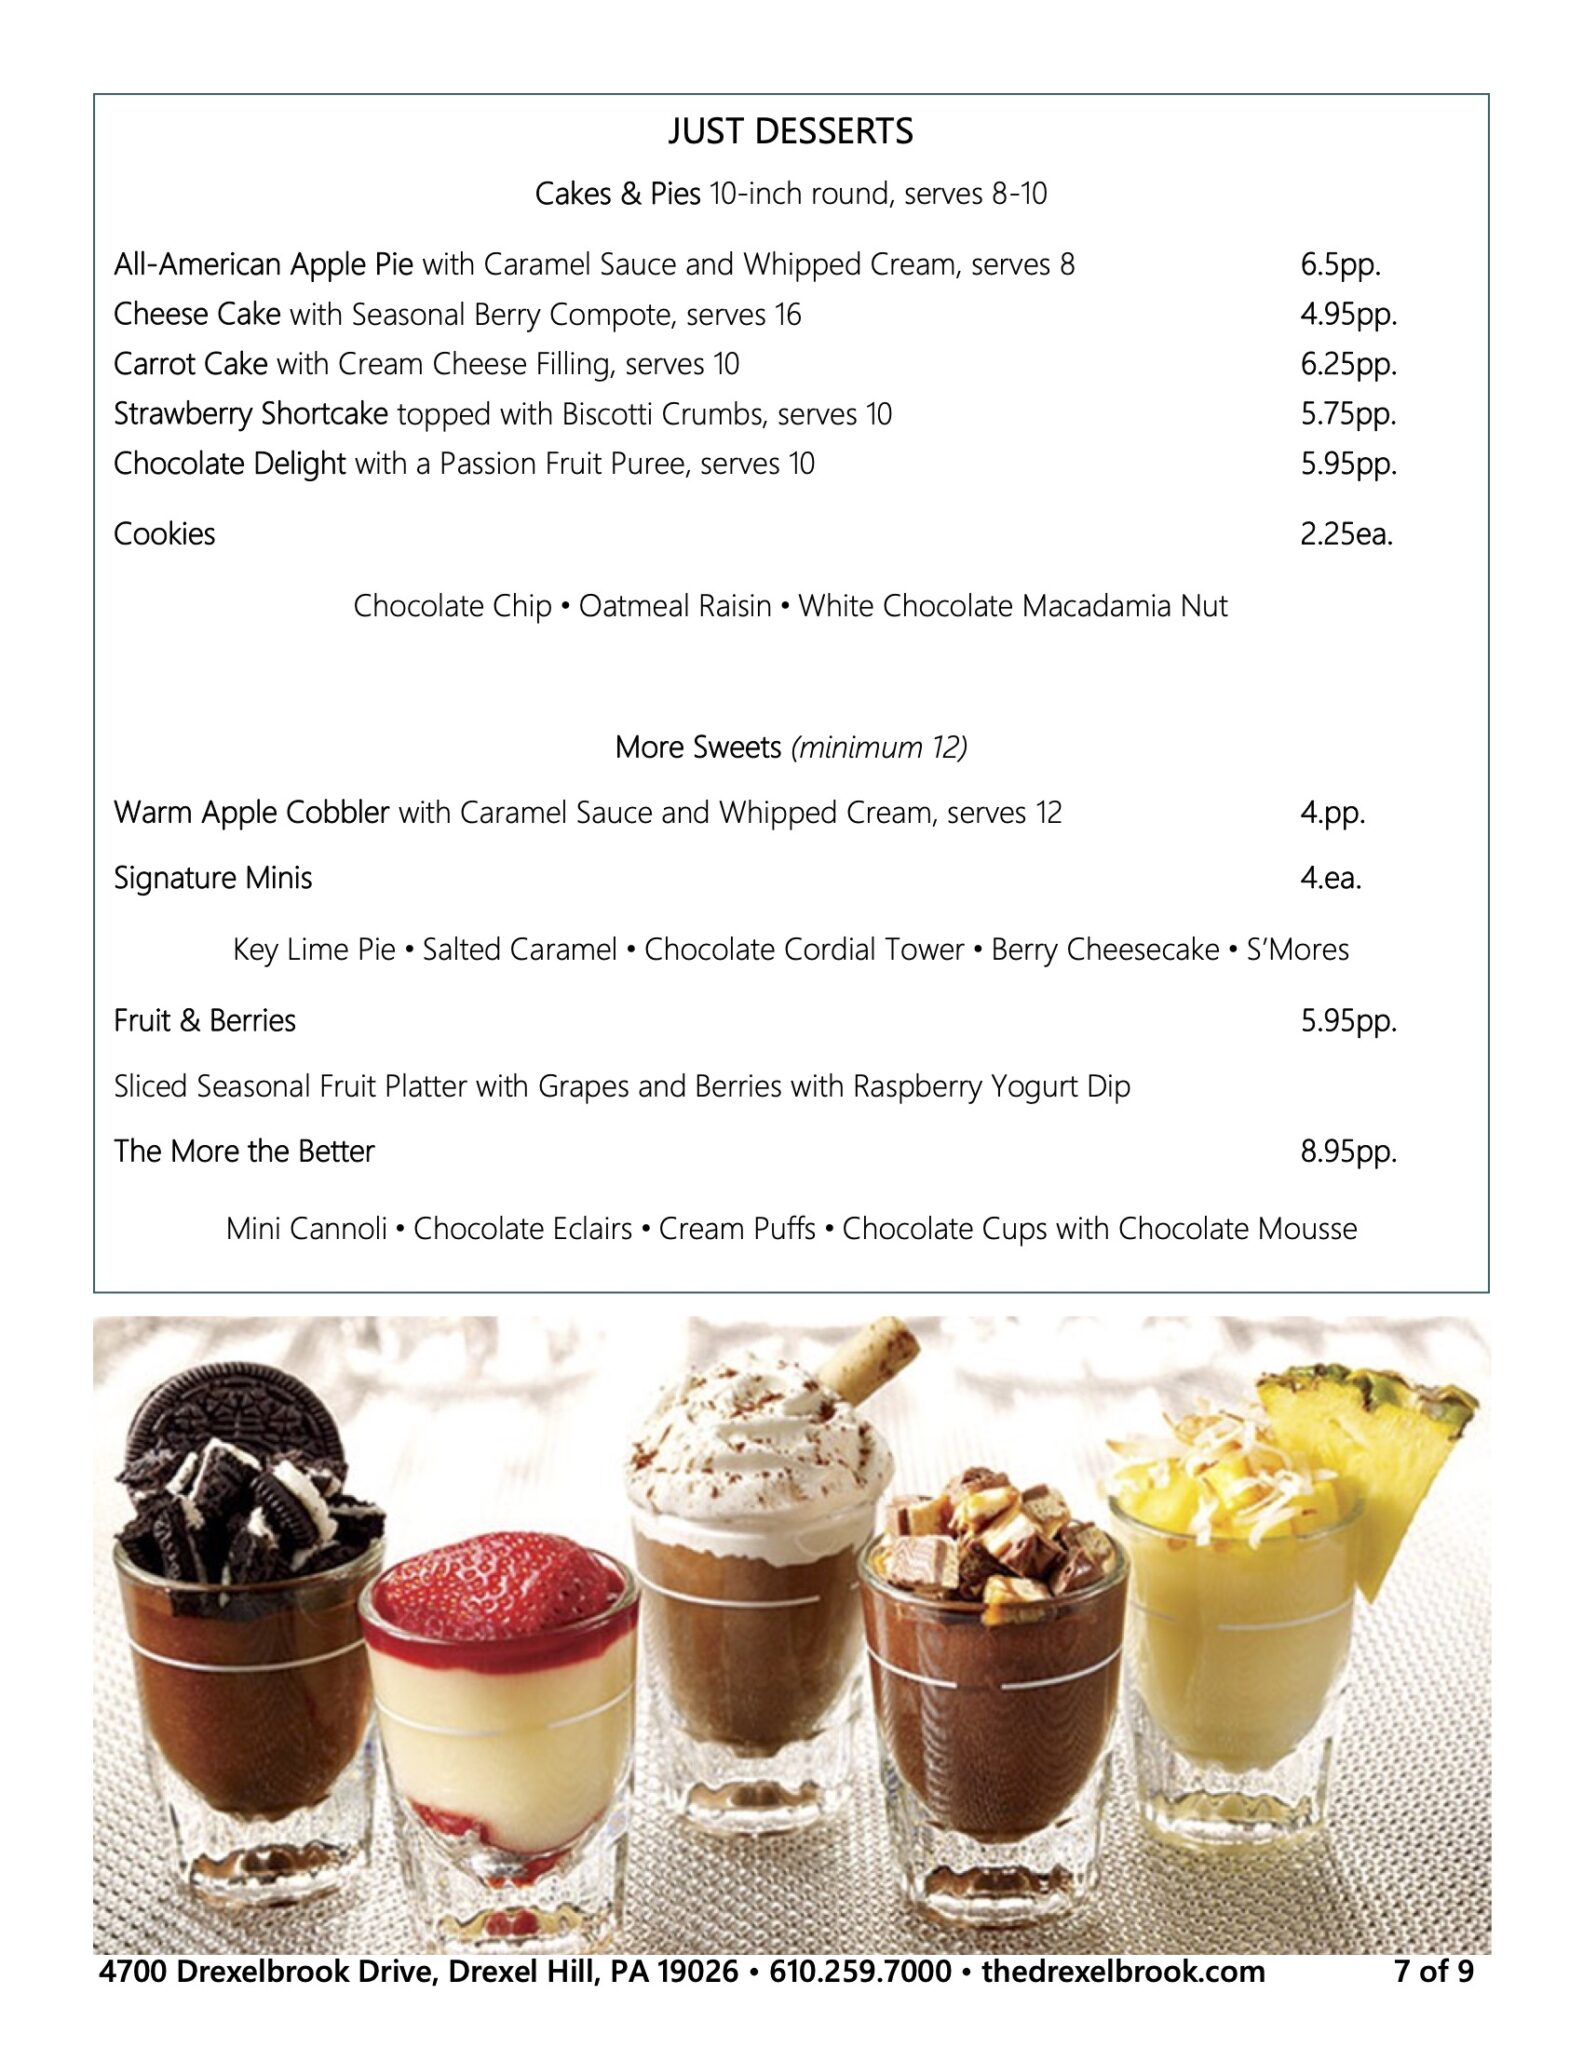 Drexelbrook events dessert menu